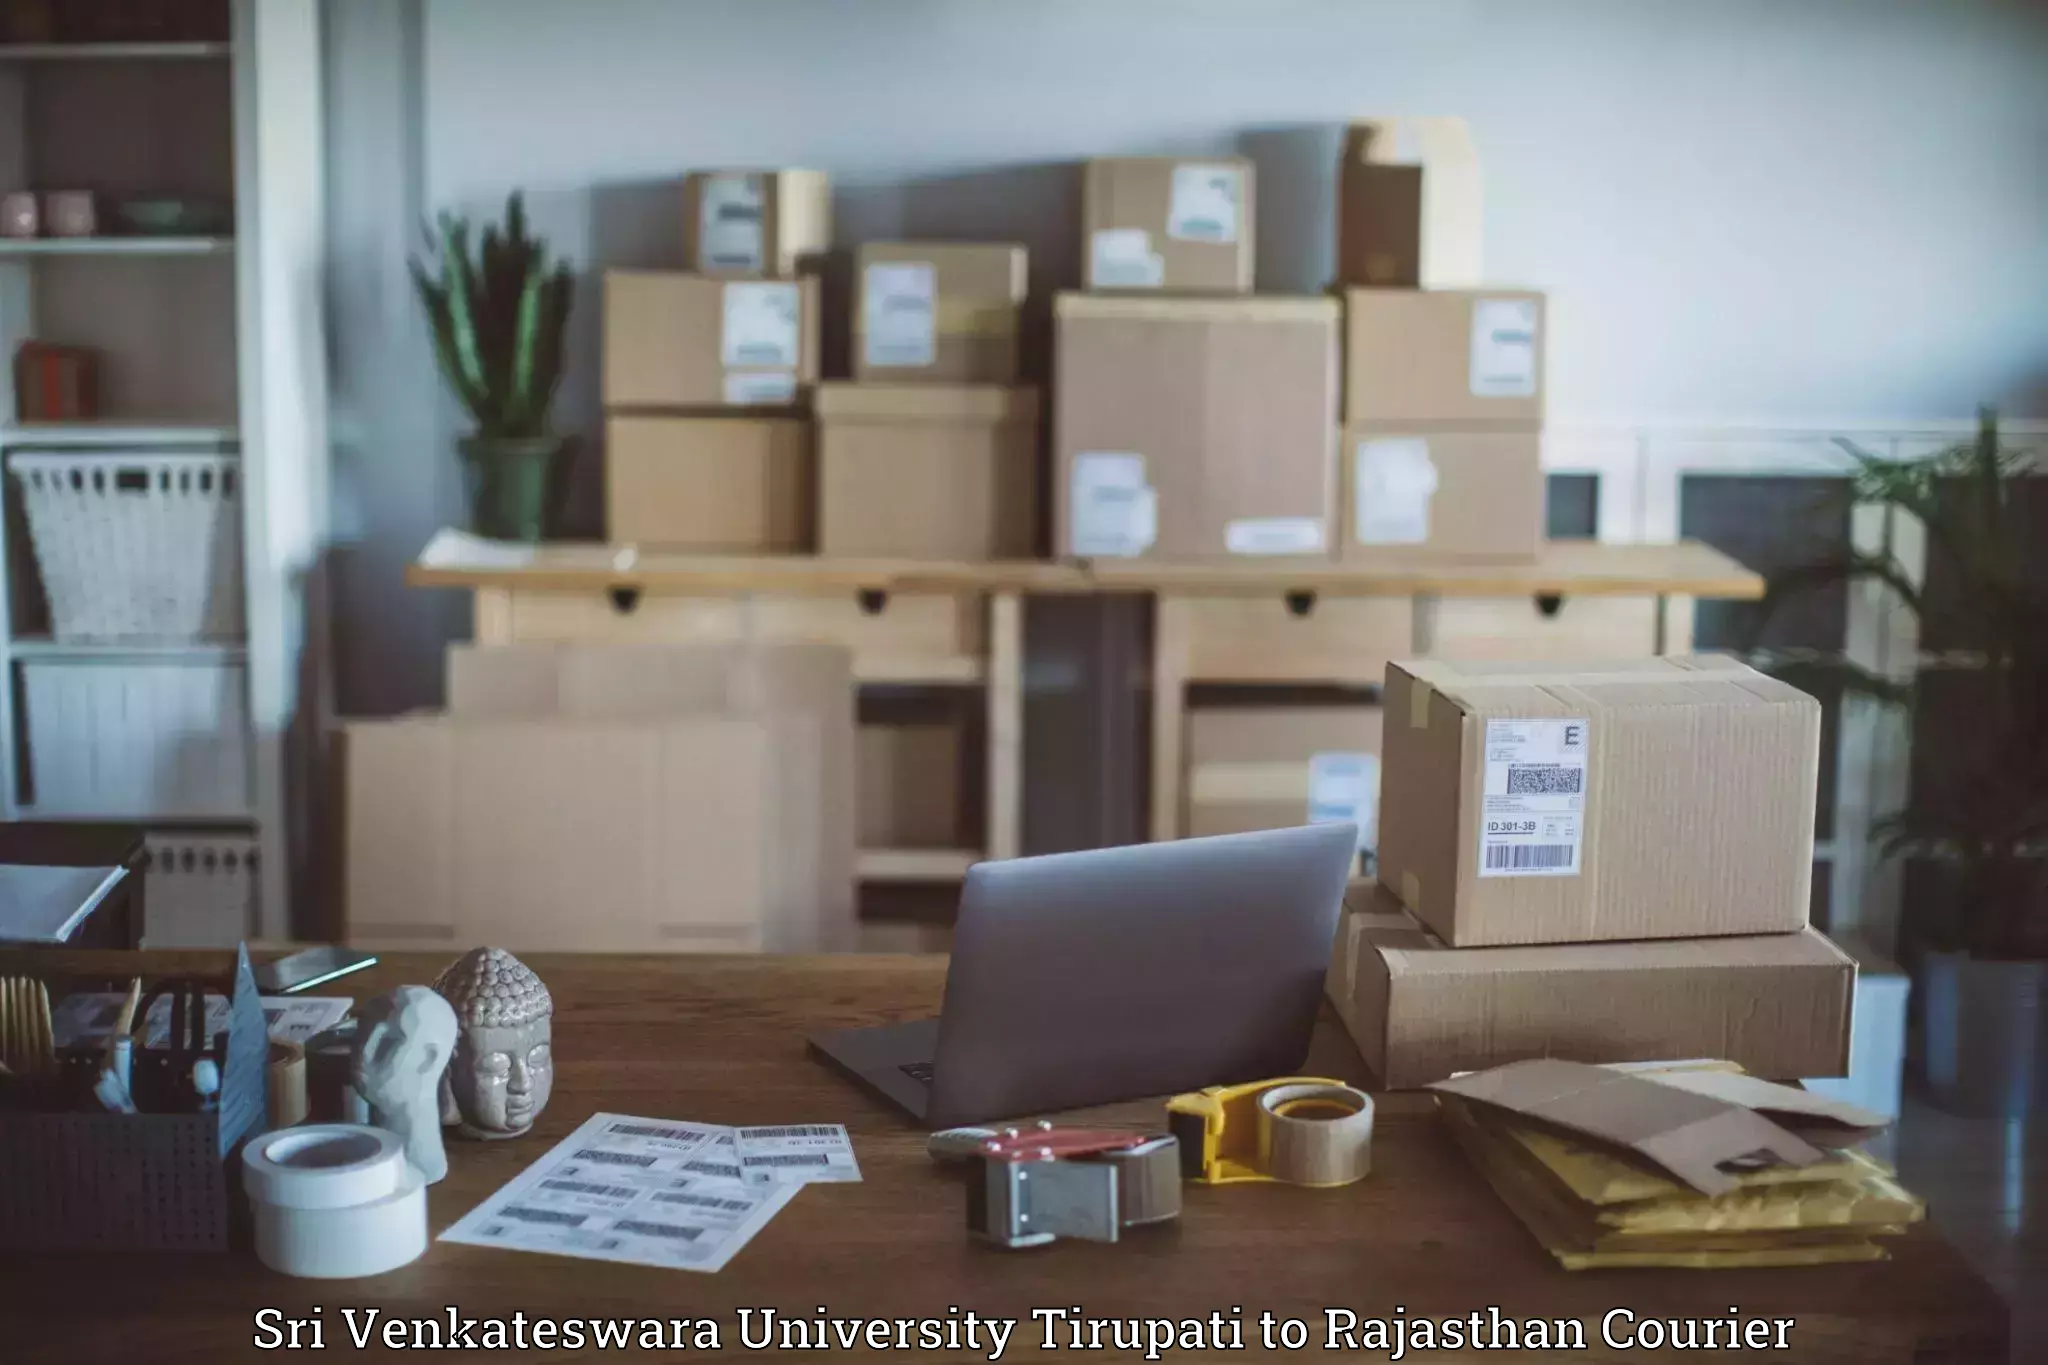 Reliable parcel services Sri Venkateswara University Tirupati to Jalore